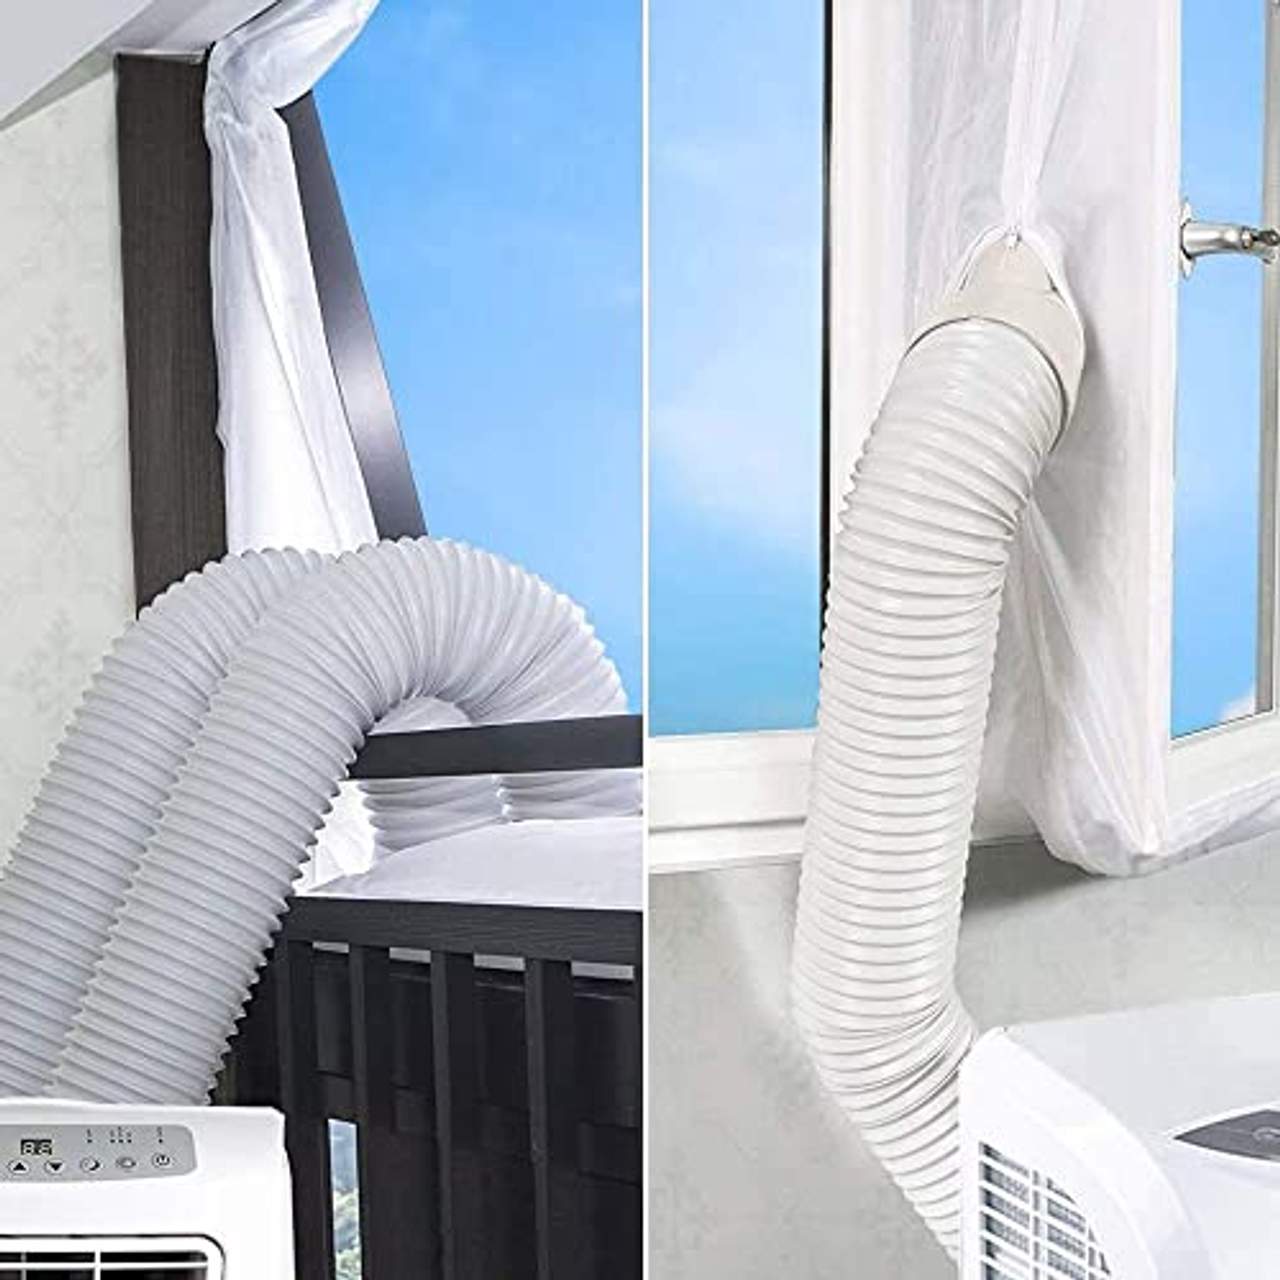 Blinngo Fensterabdichtung Für mobile Klimageräte und Abluft-Wäschetrockner 400cm Universal